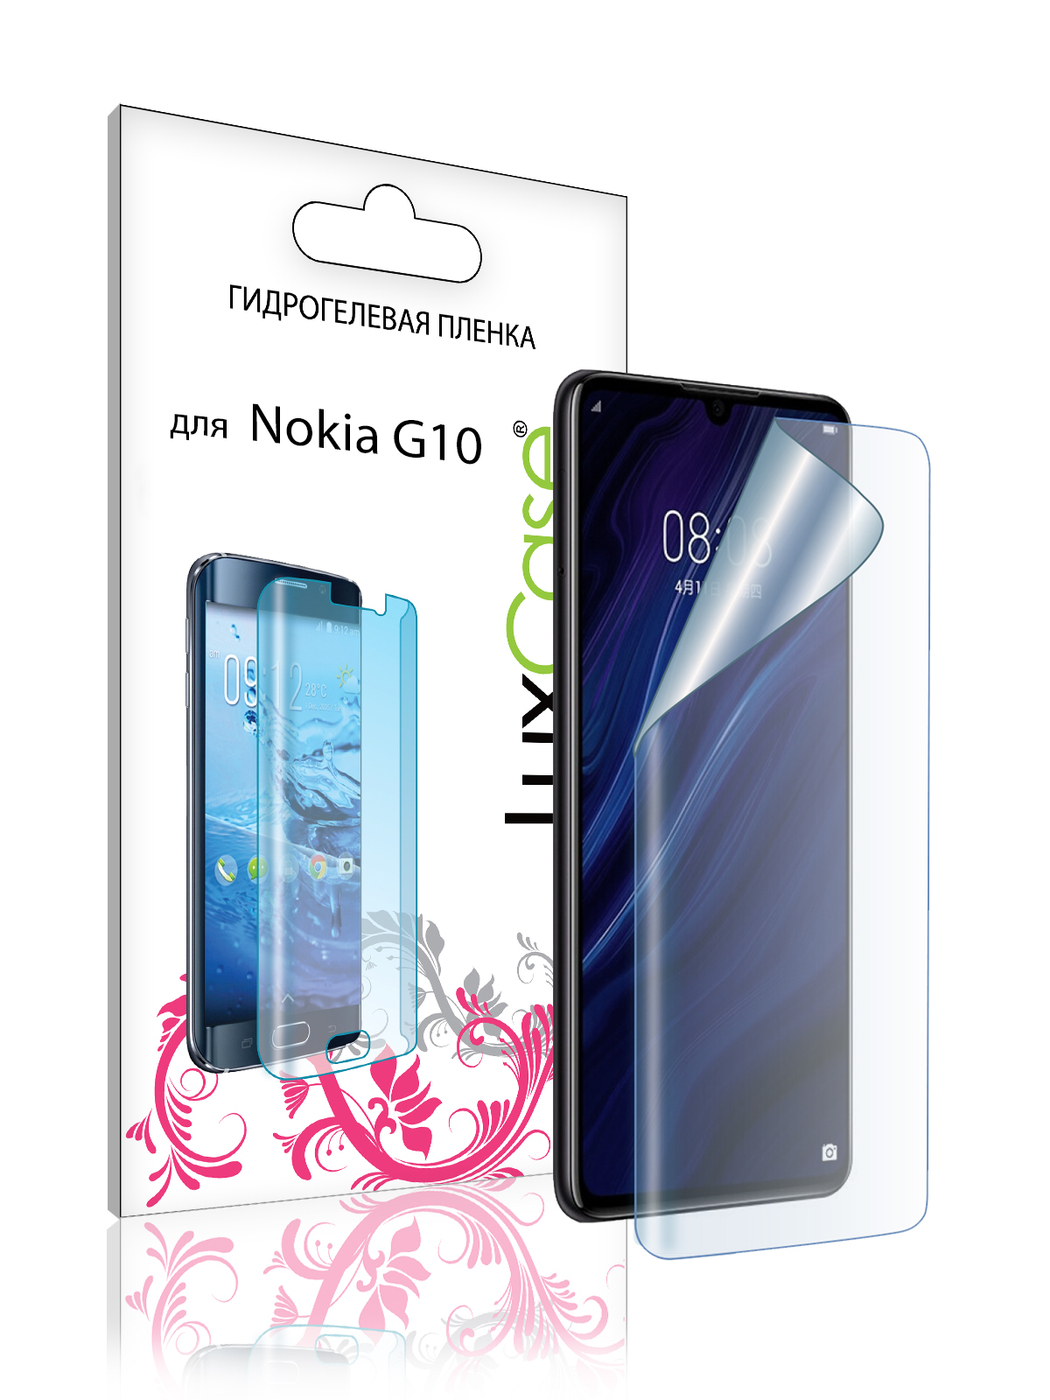 Пленка гидрогелевая LuxCase для Nokia G20 Front Transparent 86392 пленка гидрогелевая luxcase для nokia g20 front and back transparent 86394